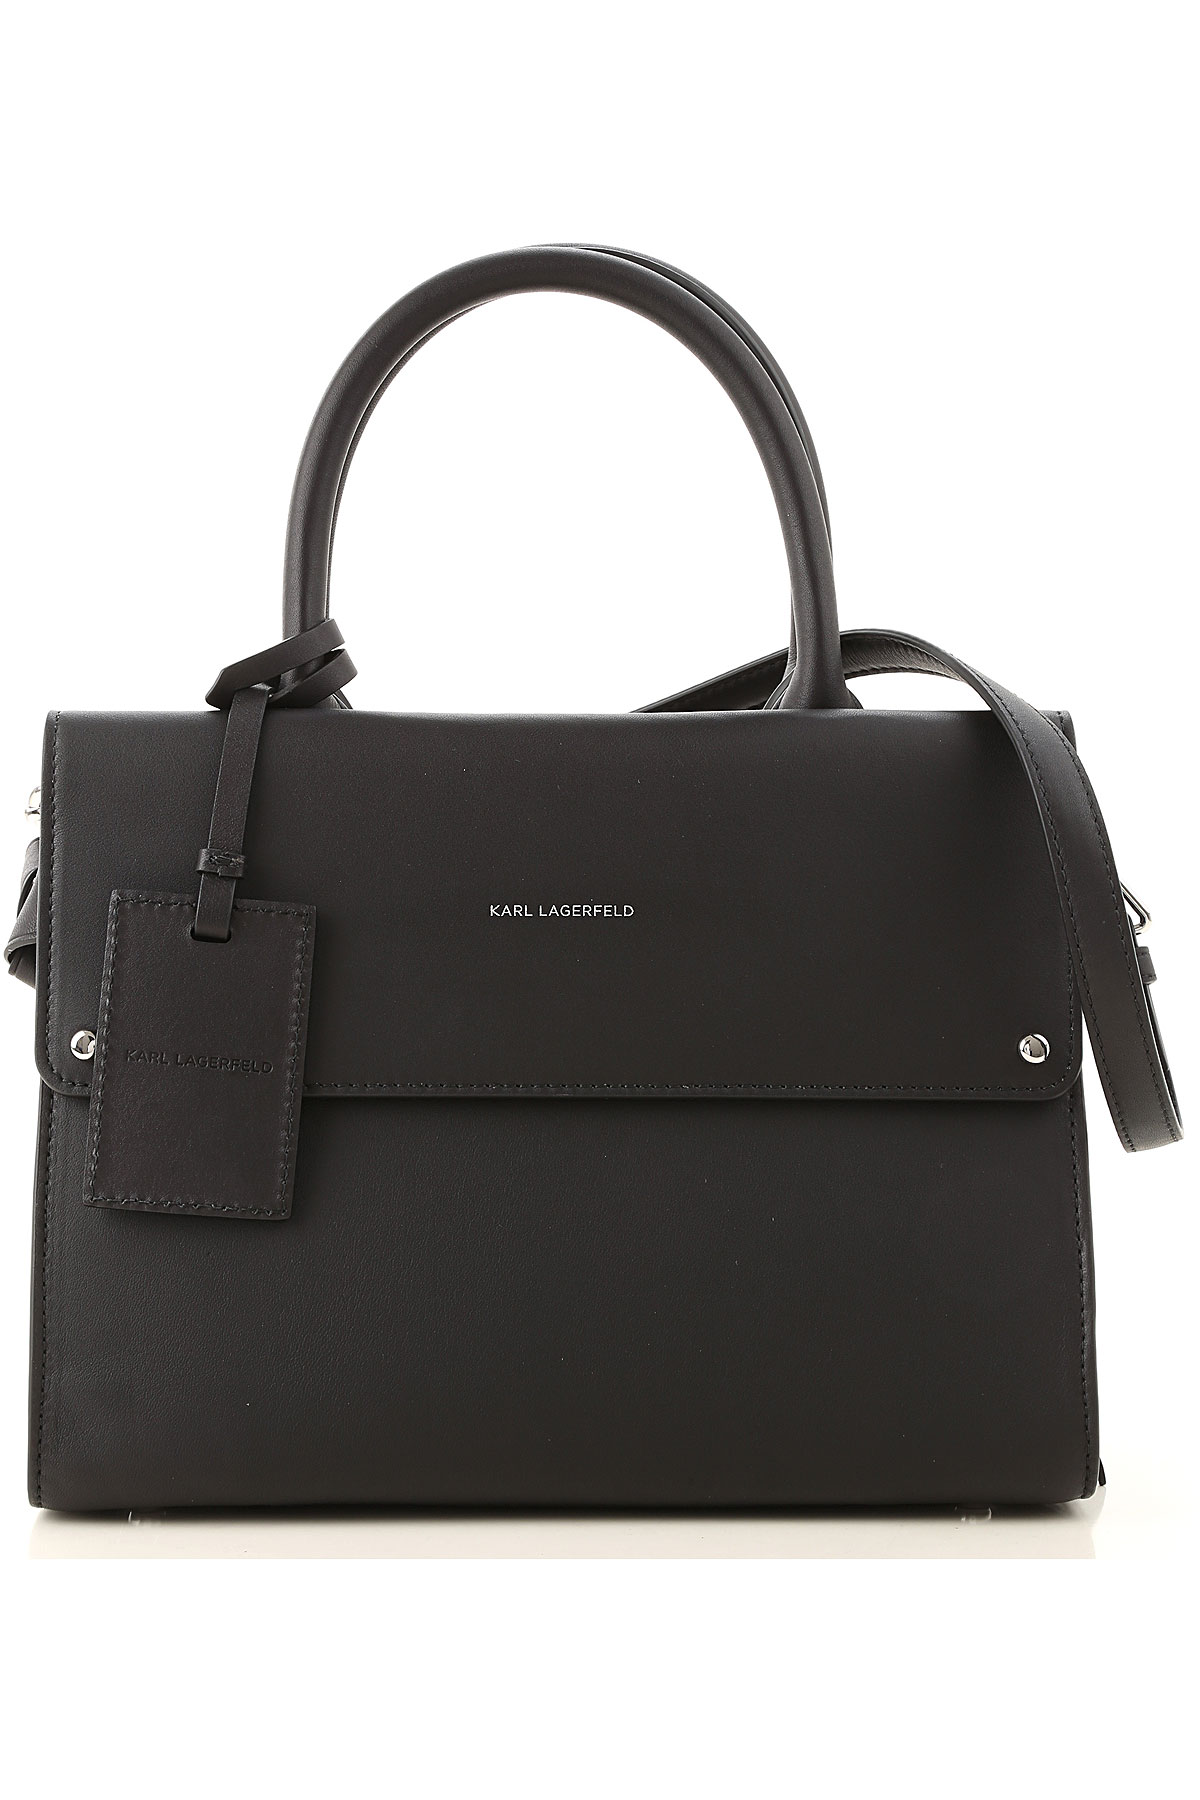 Handbags Karl Lagerfeld, Style code: 96kw3249-black-